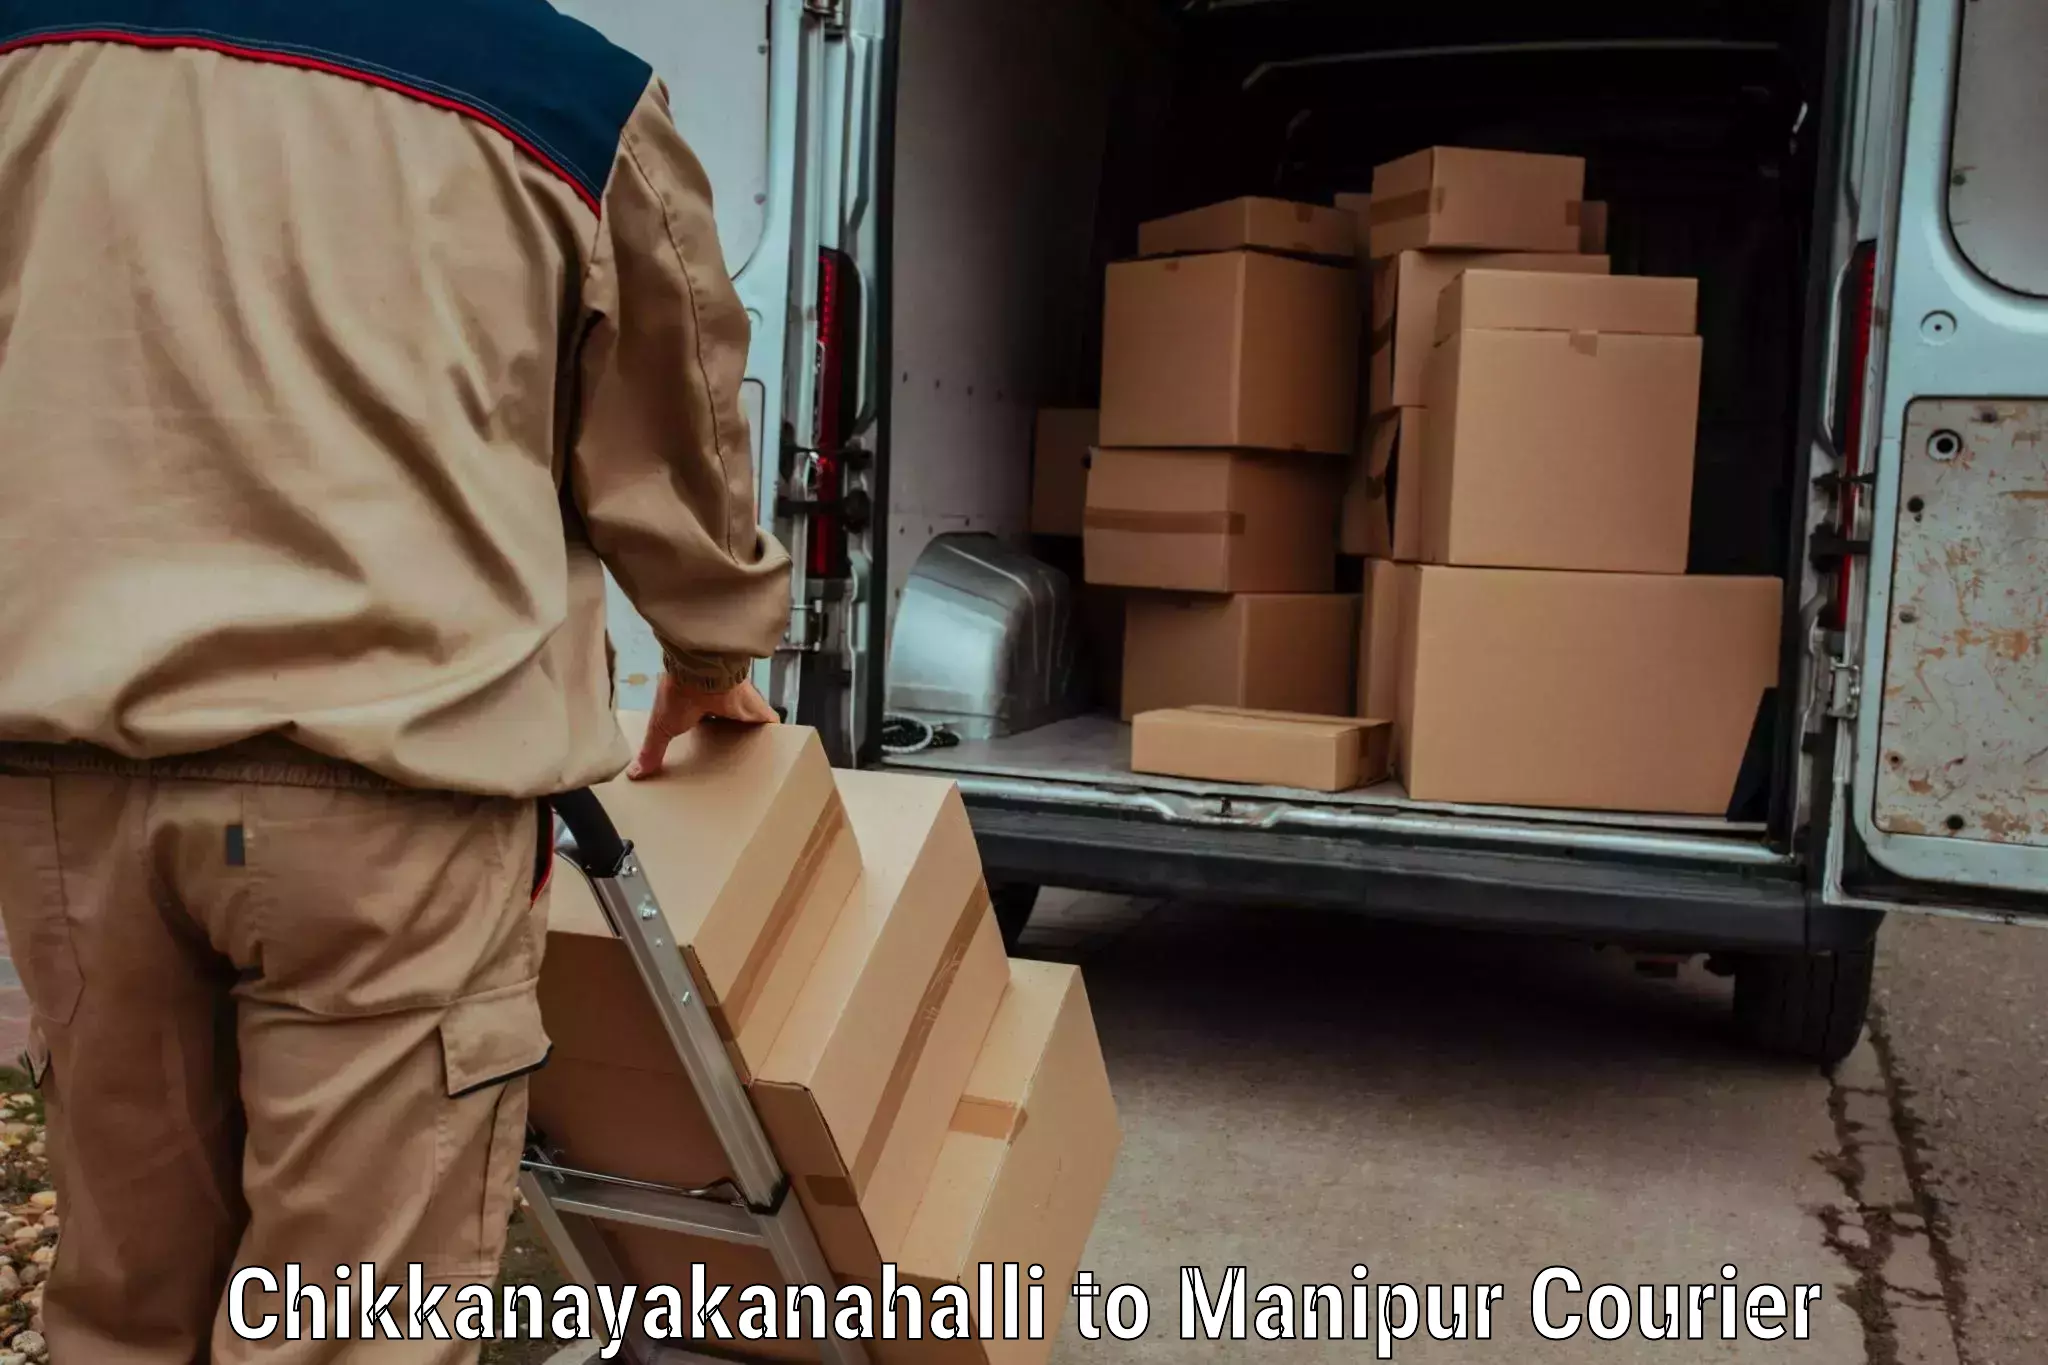 Dynamic courier operations Chikkanayakanahalli to Manipur